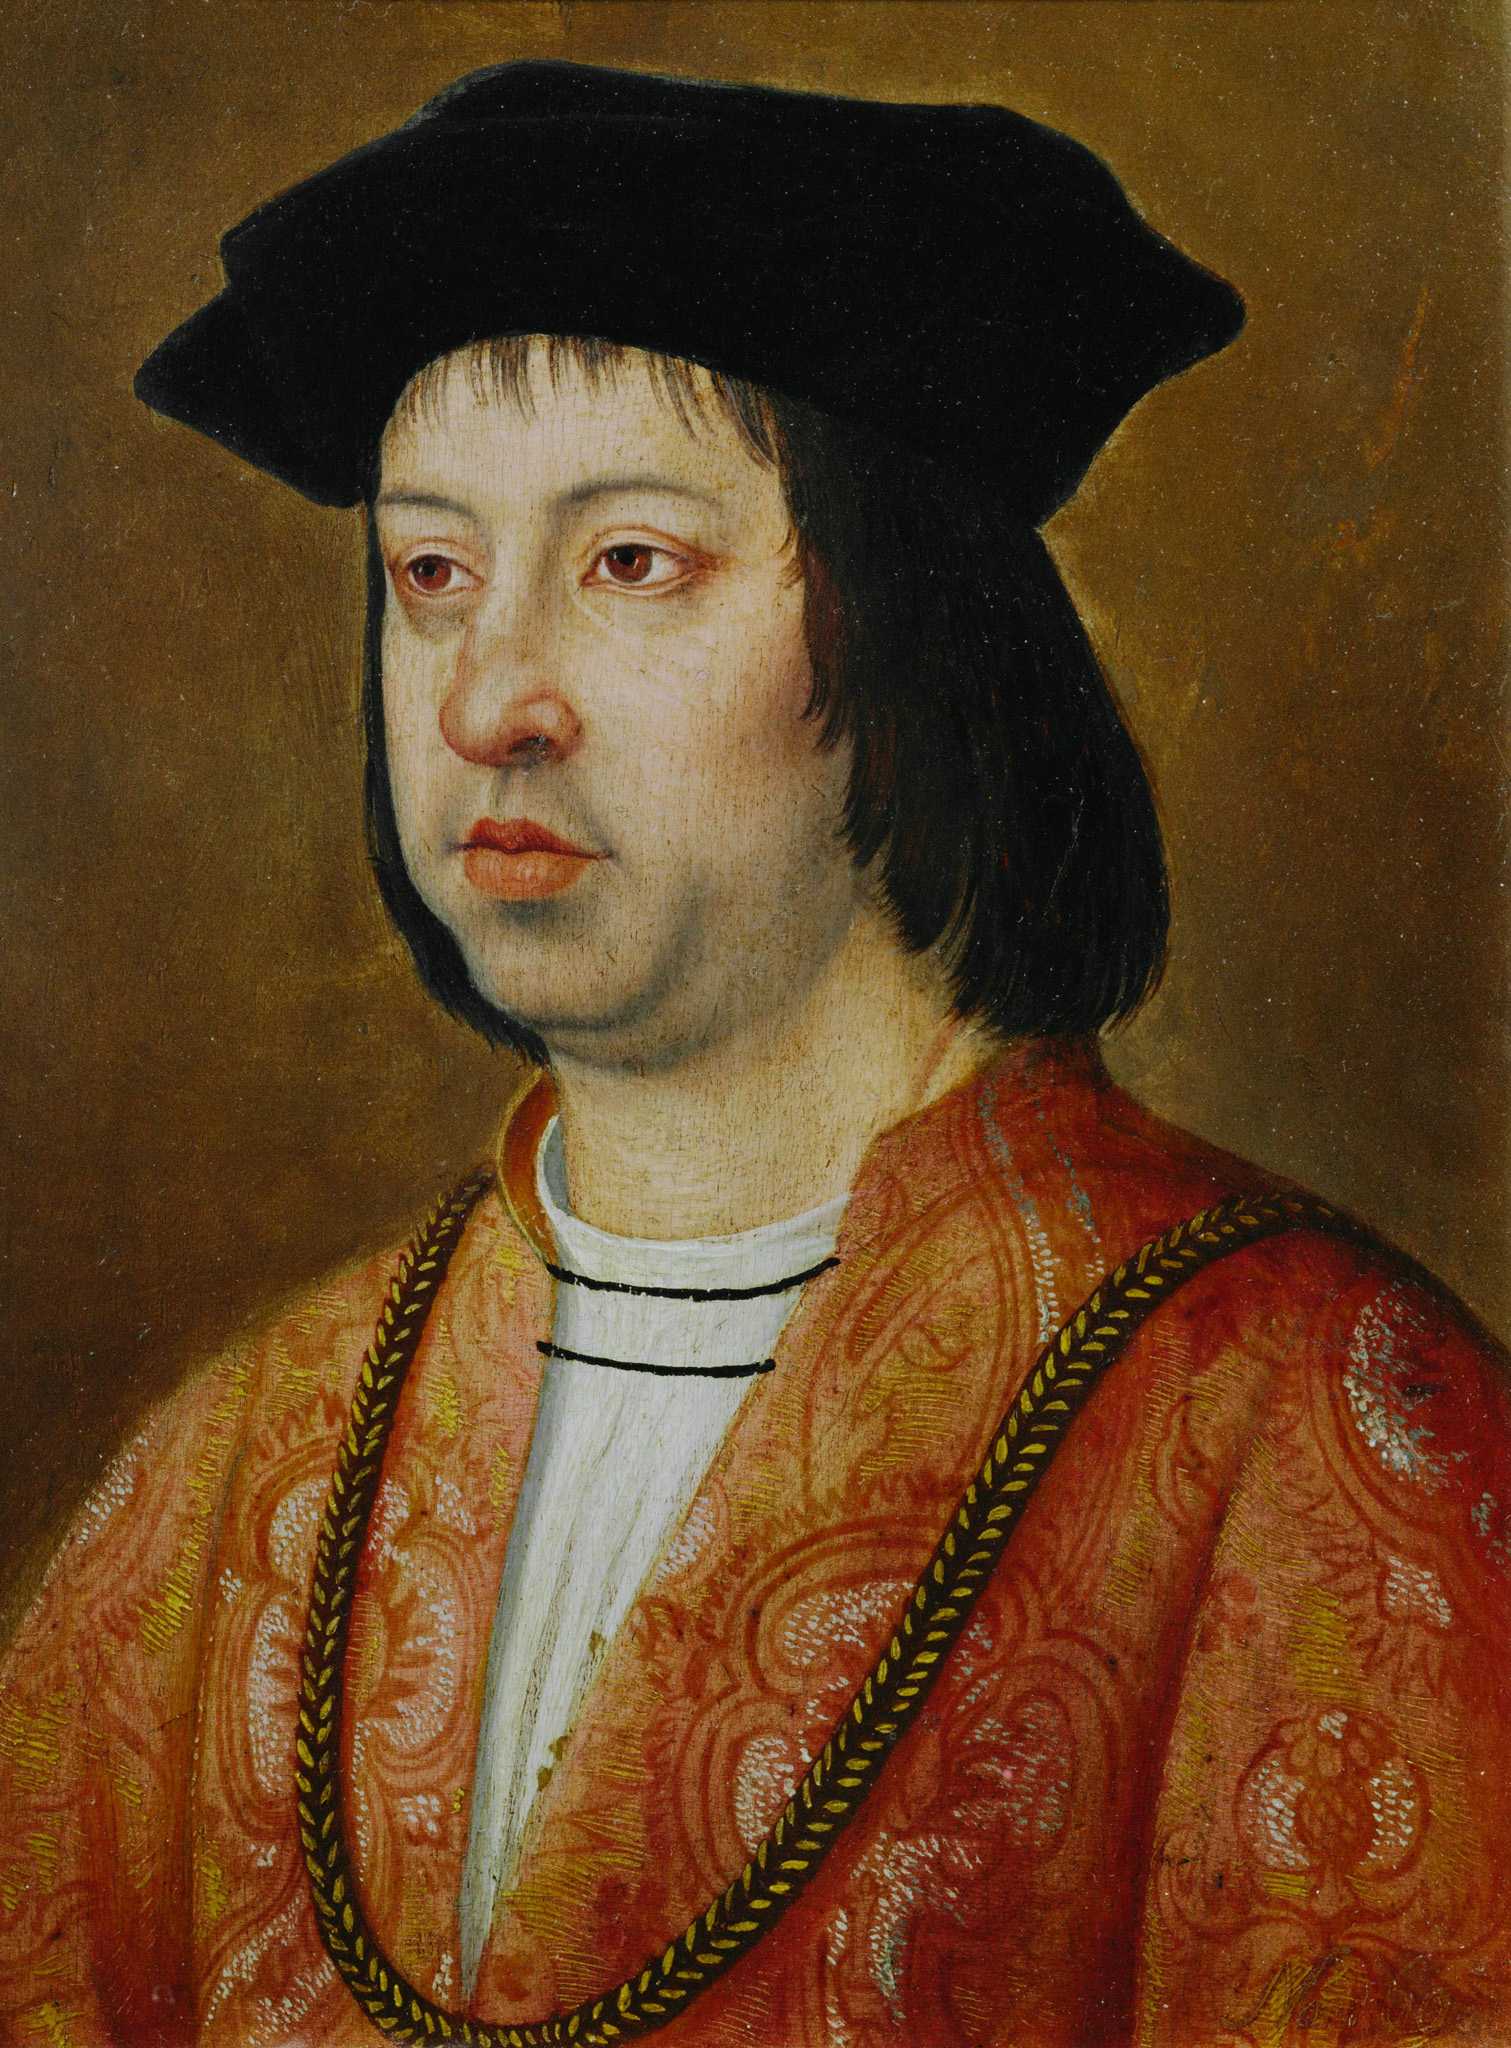 Portrait of King Ferdinand of Spain